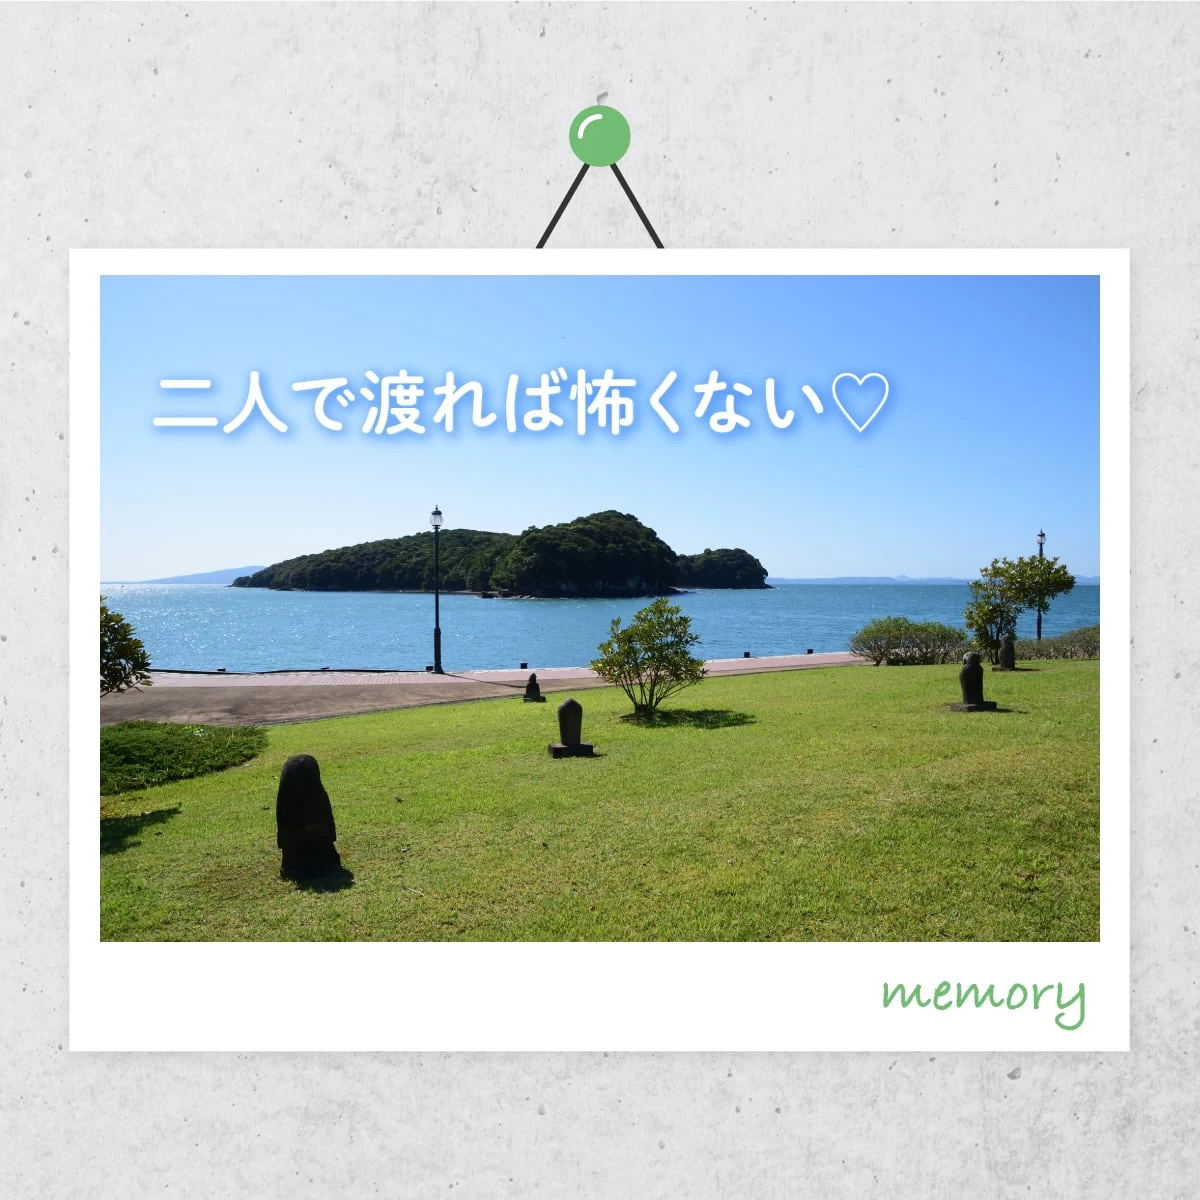 熊本の日奈久温泉へ  恋路島を巡るカップル旅